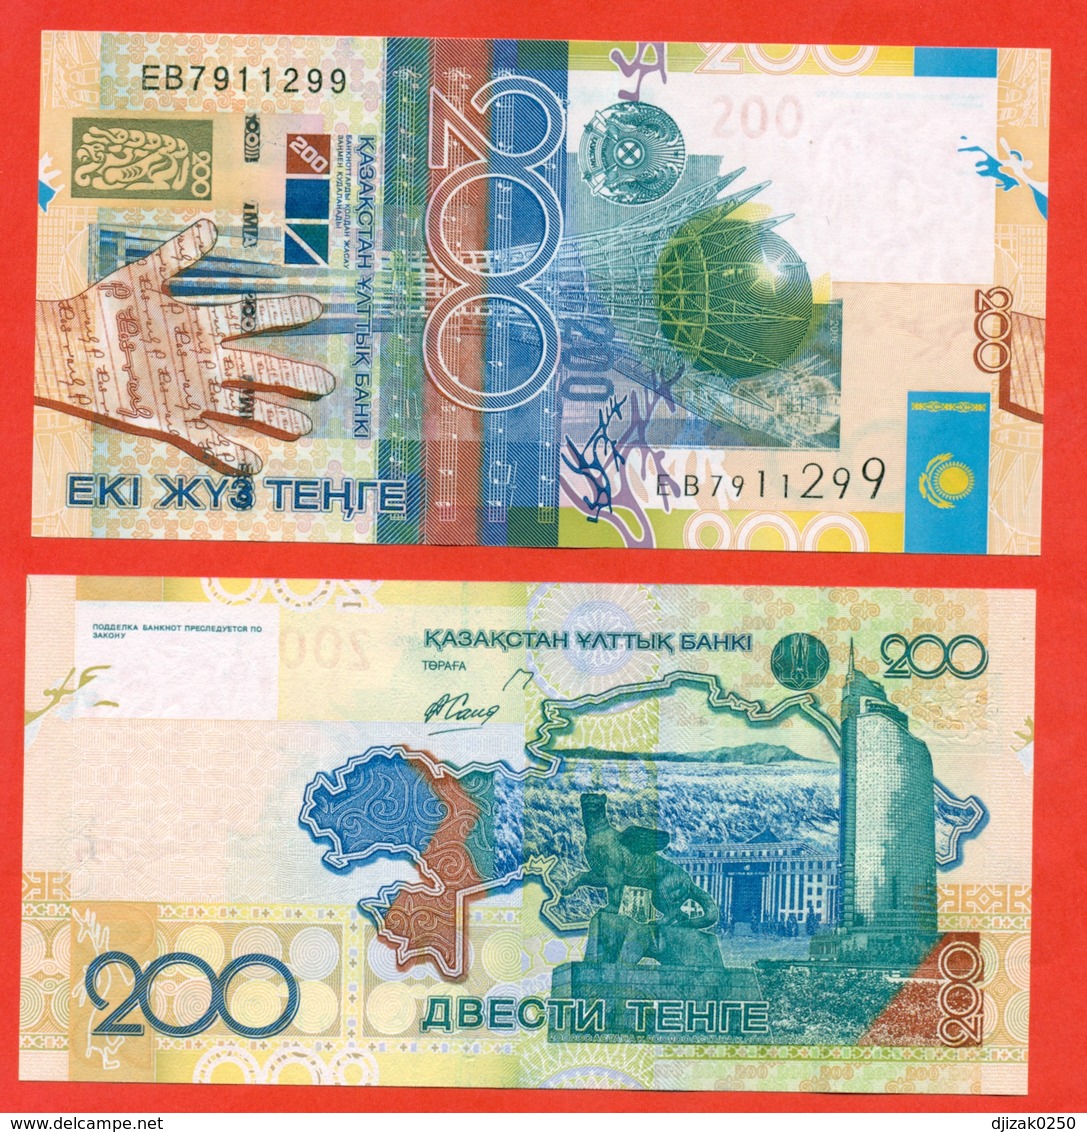 Kazakhstan 2006. Banknote 200 Tenges. UNC. - Kazakhstan